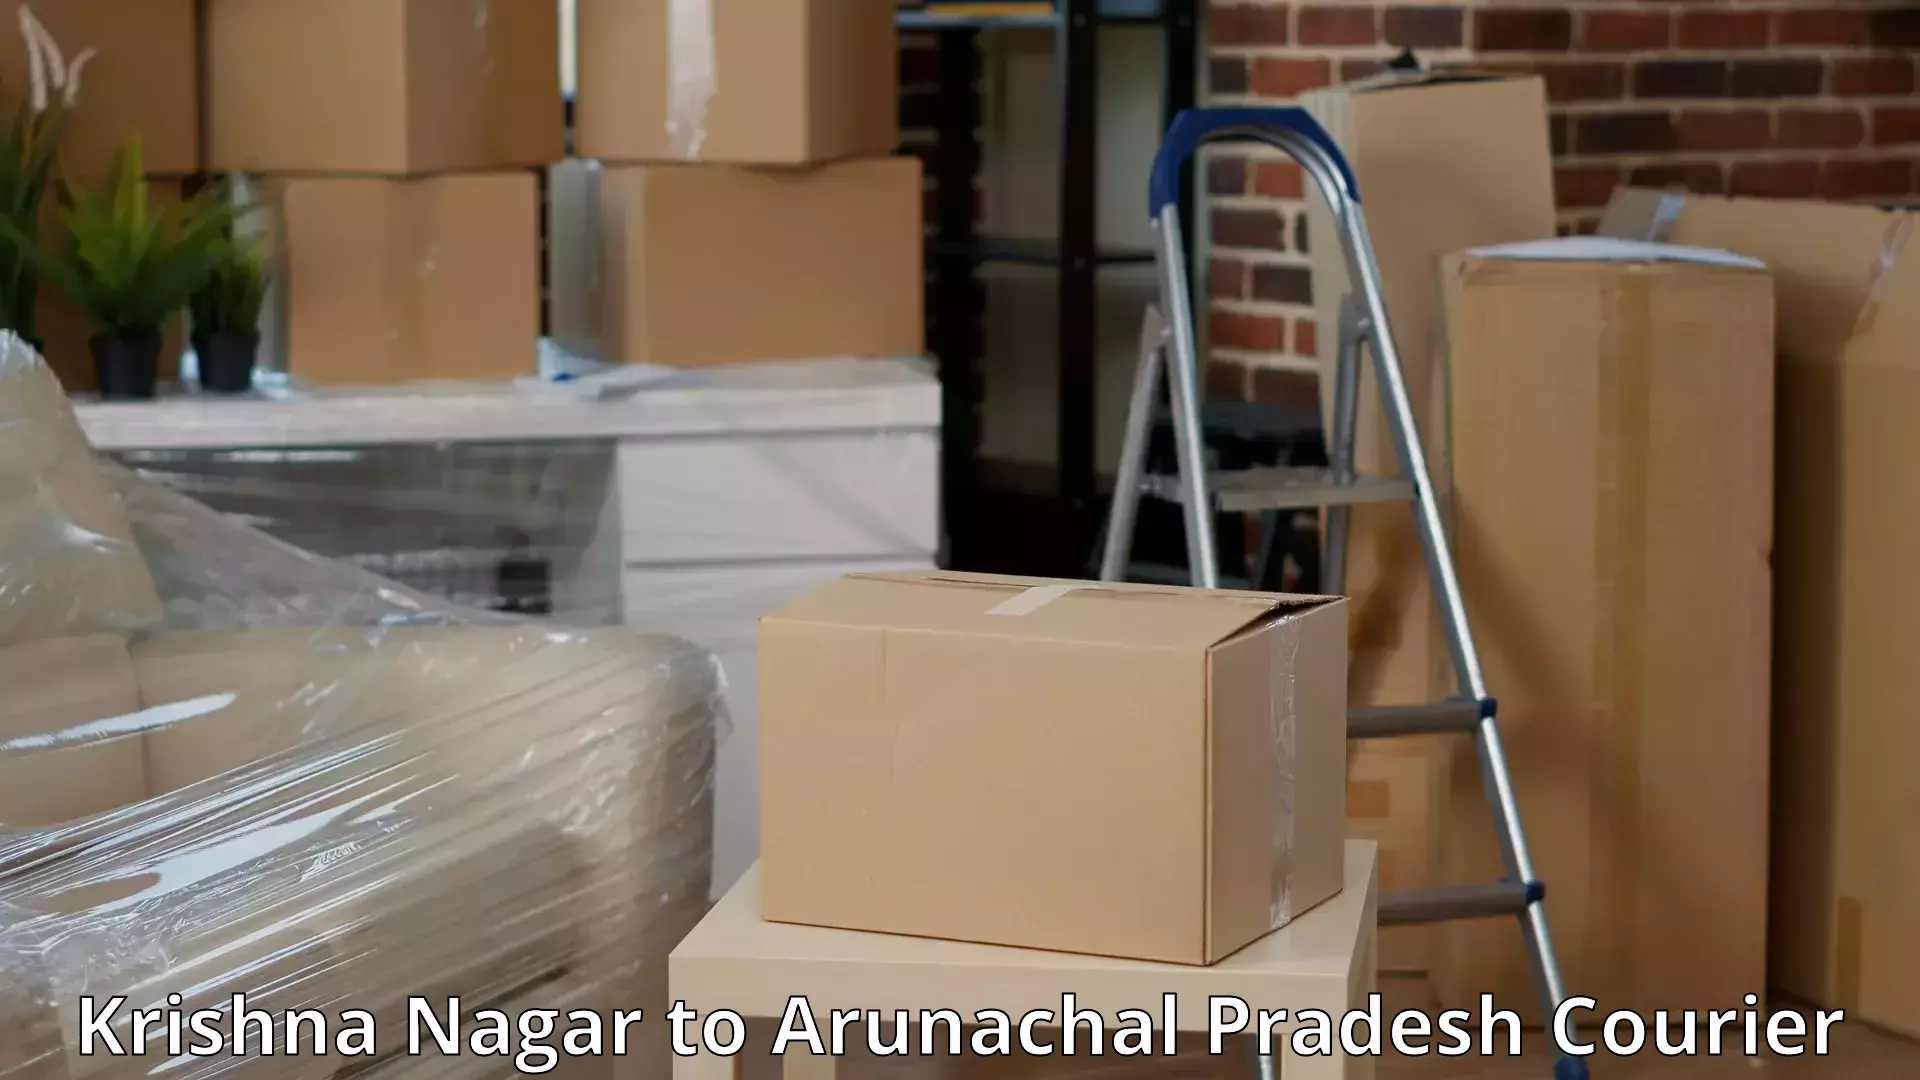 Furniture moving experts Krishna Nagar to Namsai